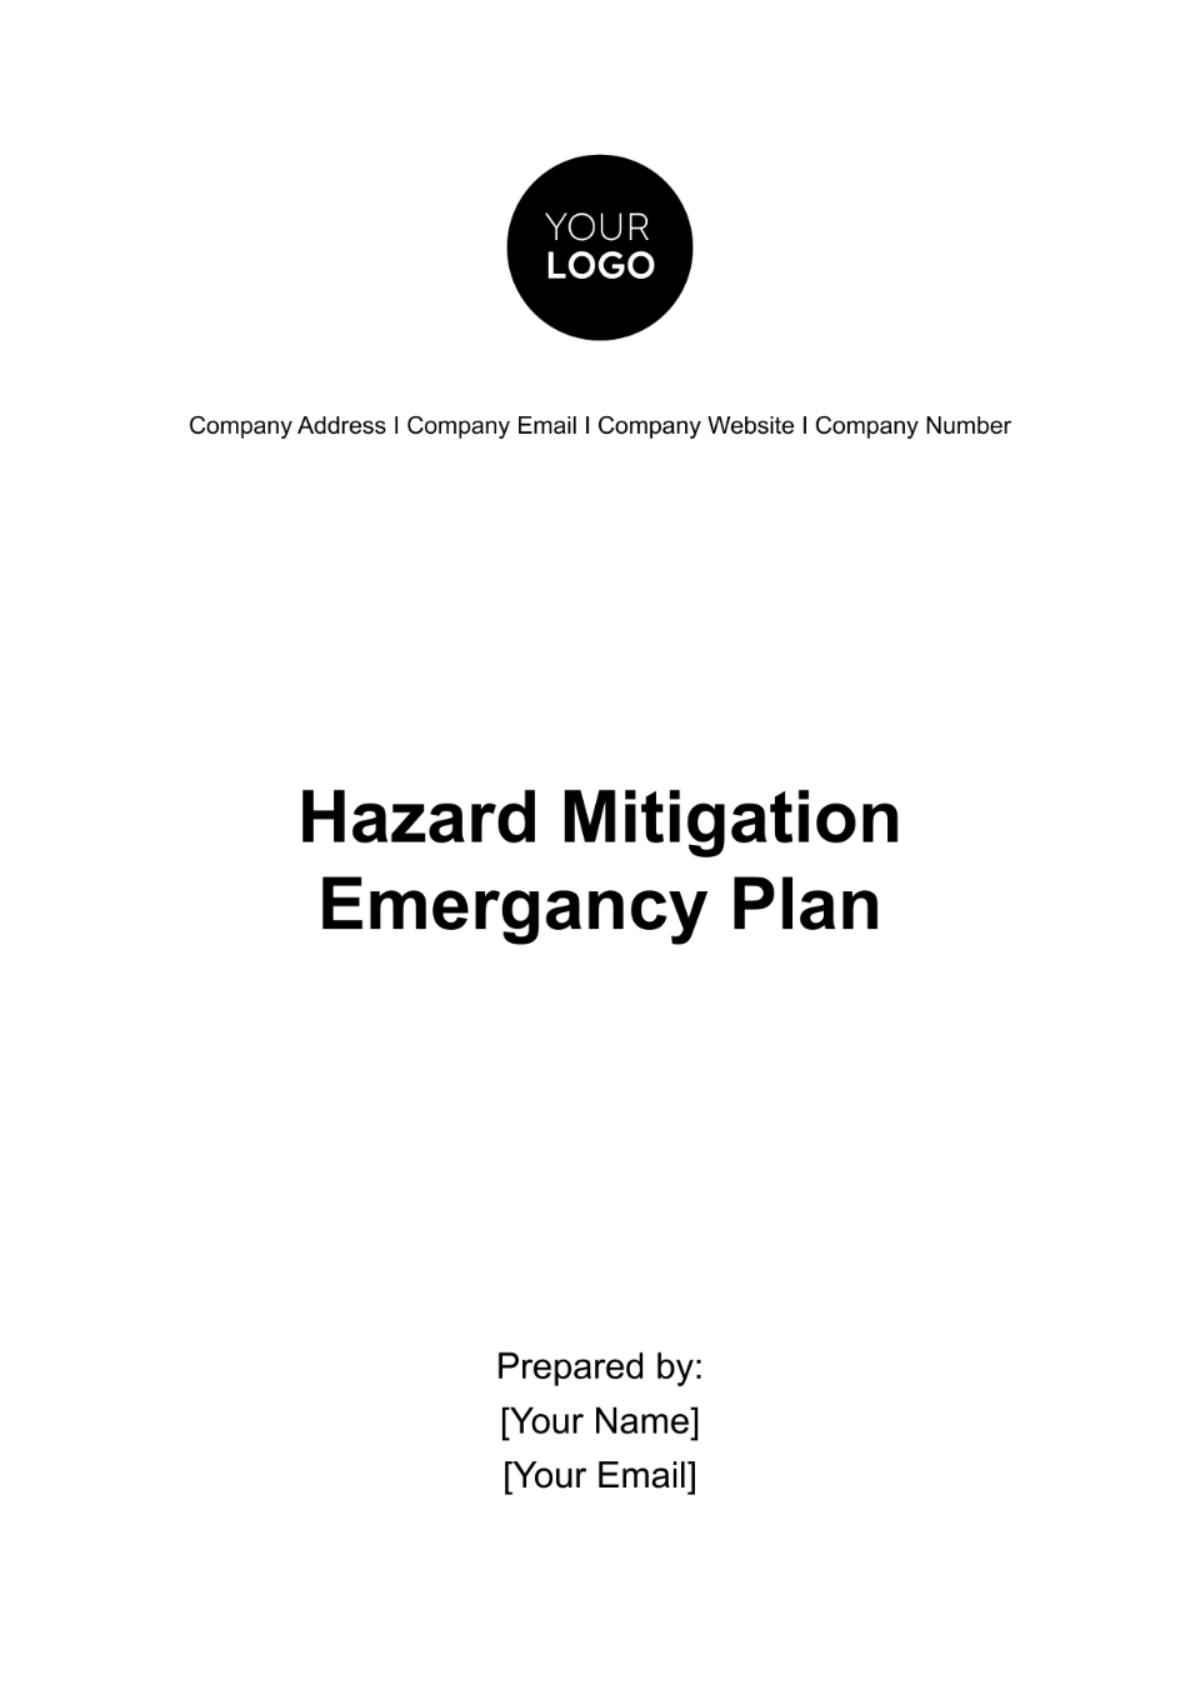 Free Hazard Mitigation Emergency Plan Template